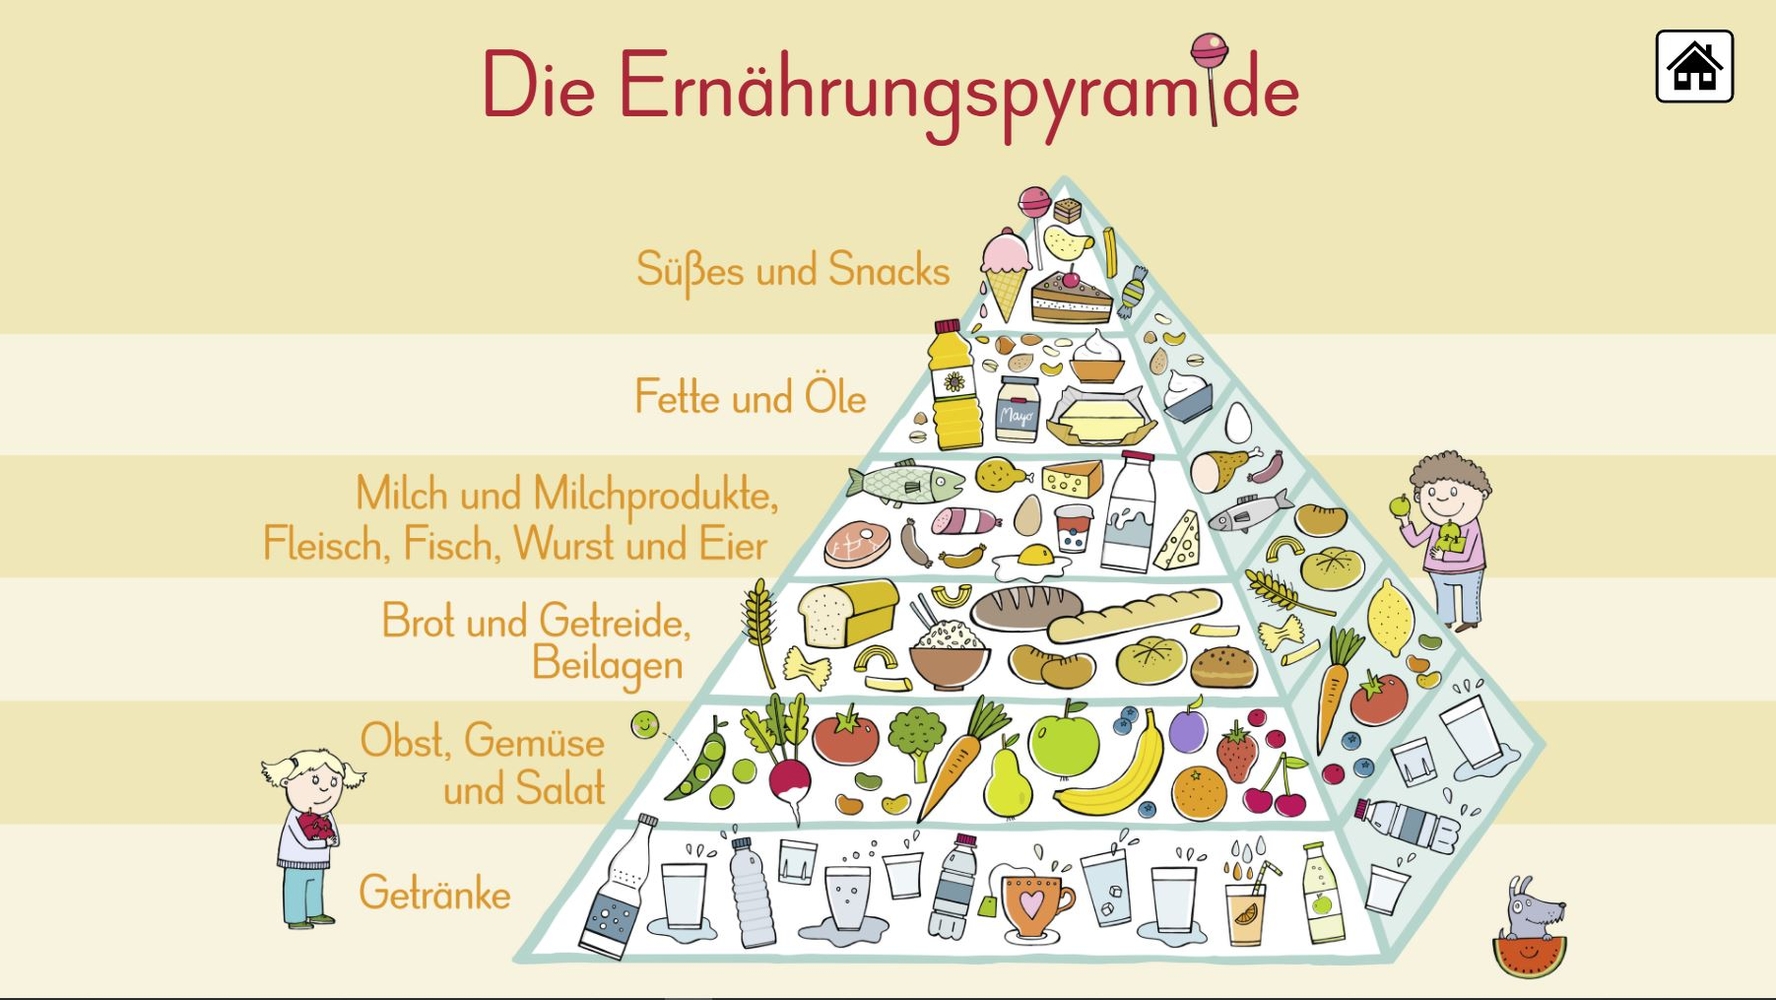 6 digitale Merk-Bilder für den Sachunterricht: Die Ernährungspyramide, Europa, Deutschland, Der Wasserkreislauf, Unsere Bäume, Unser Sonnensystem - Premium-Lizenz - Online